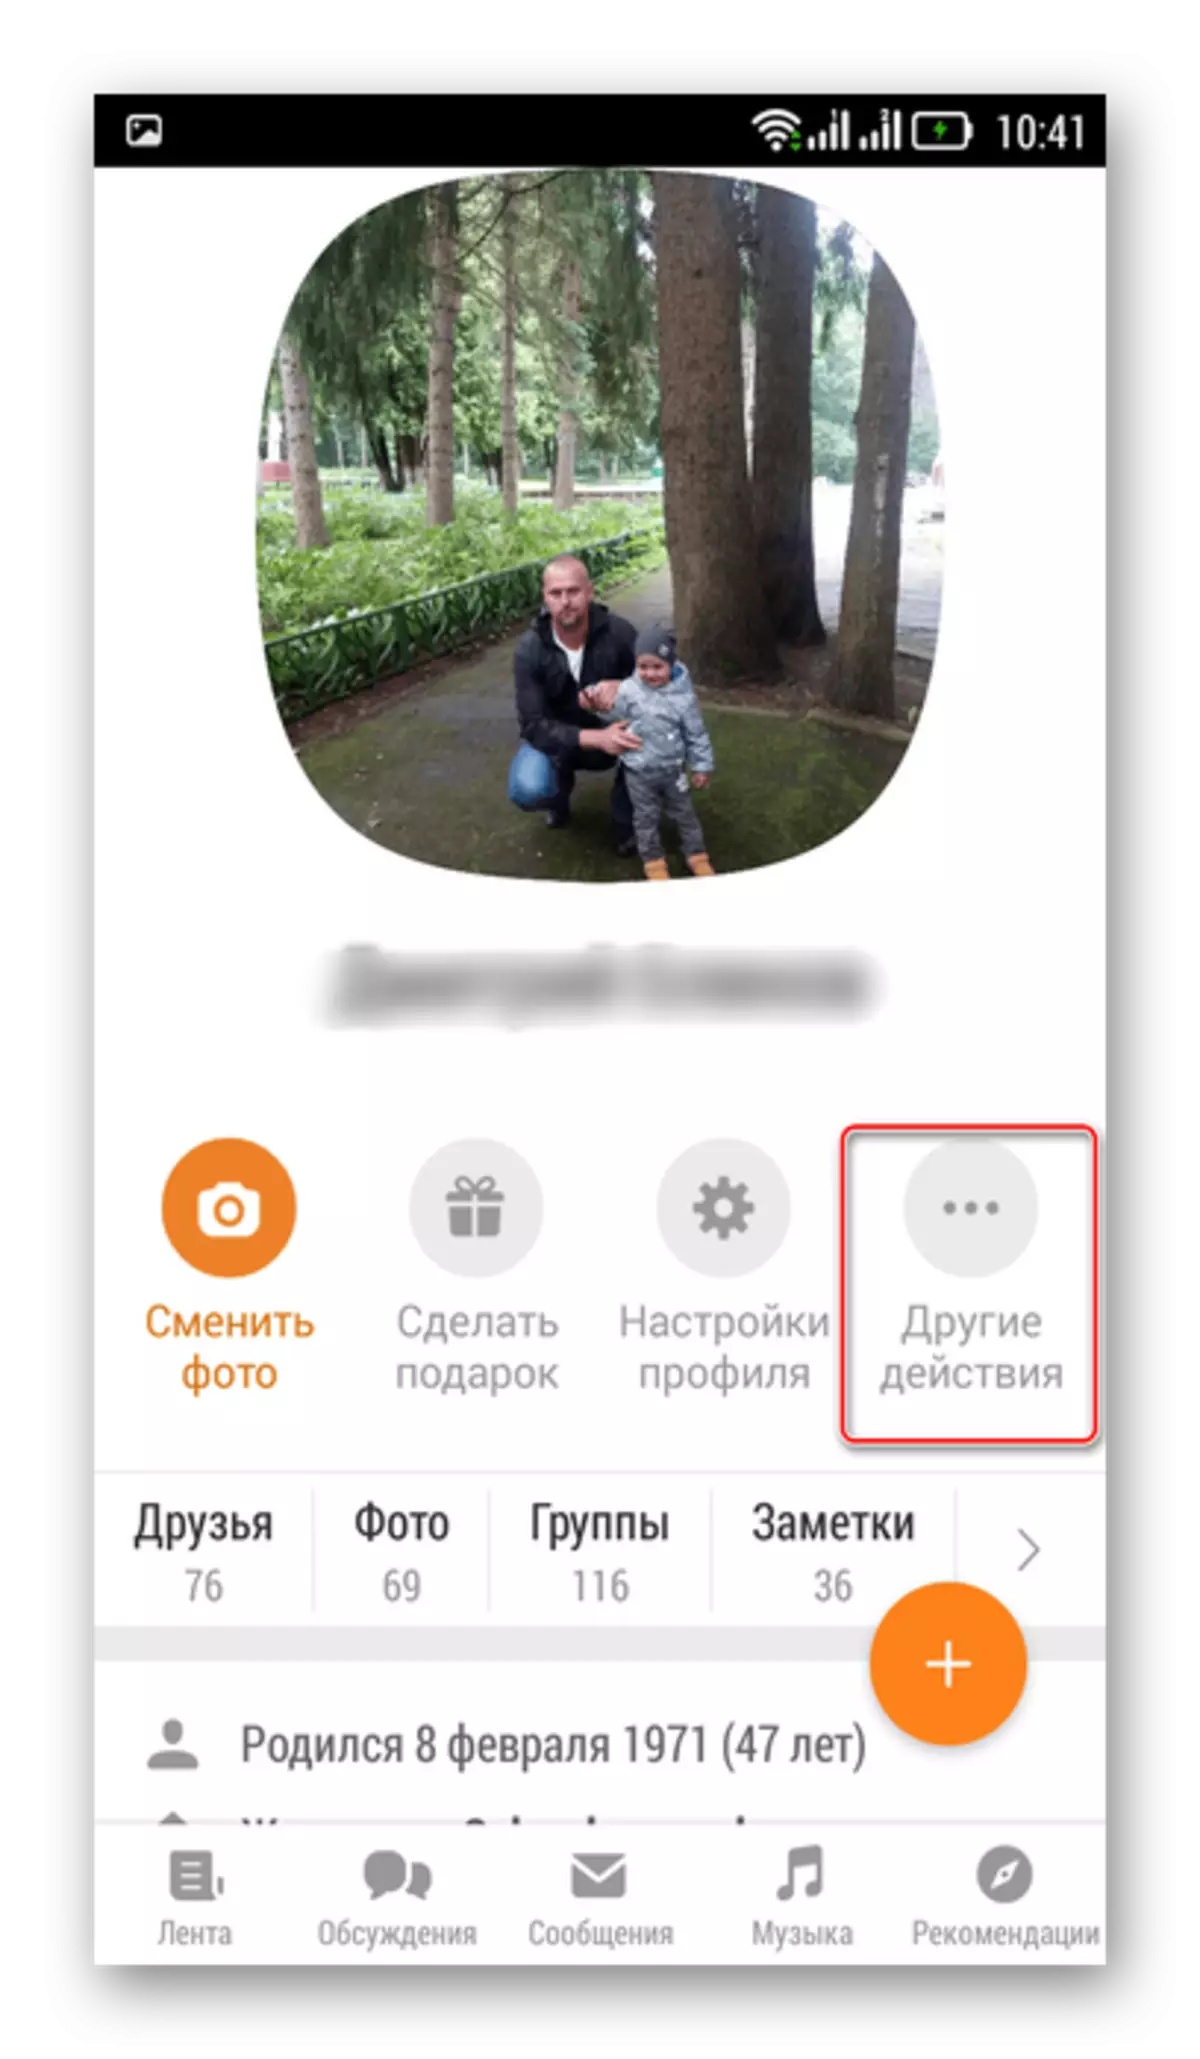 Vstop v druga dejanja v vaši mobilni aplikaciji Odnoklassniki